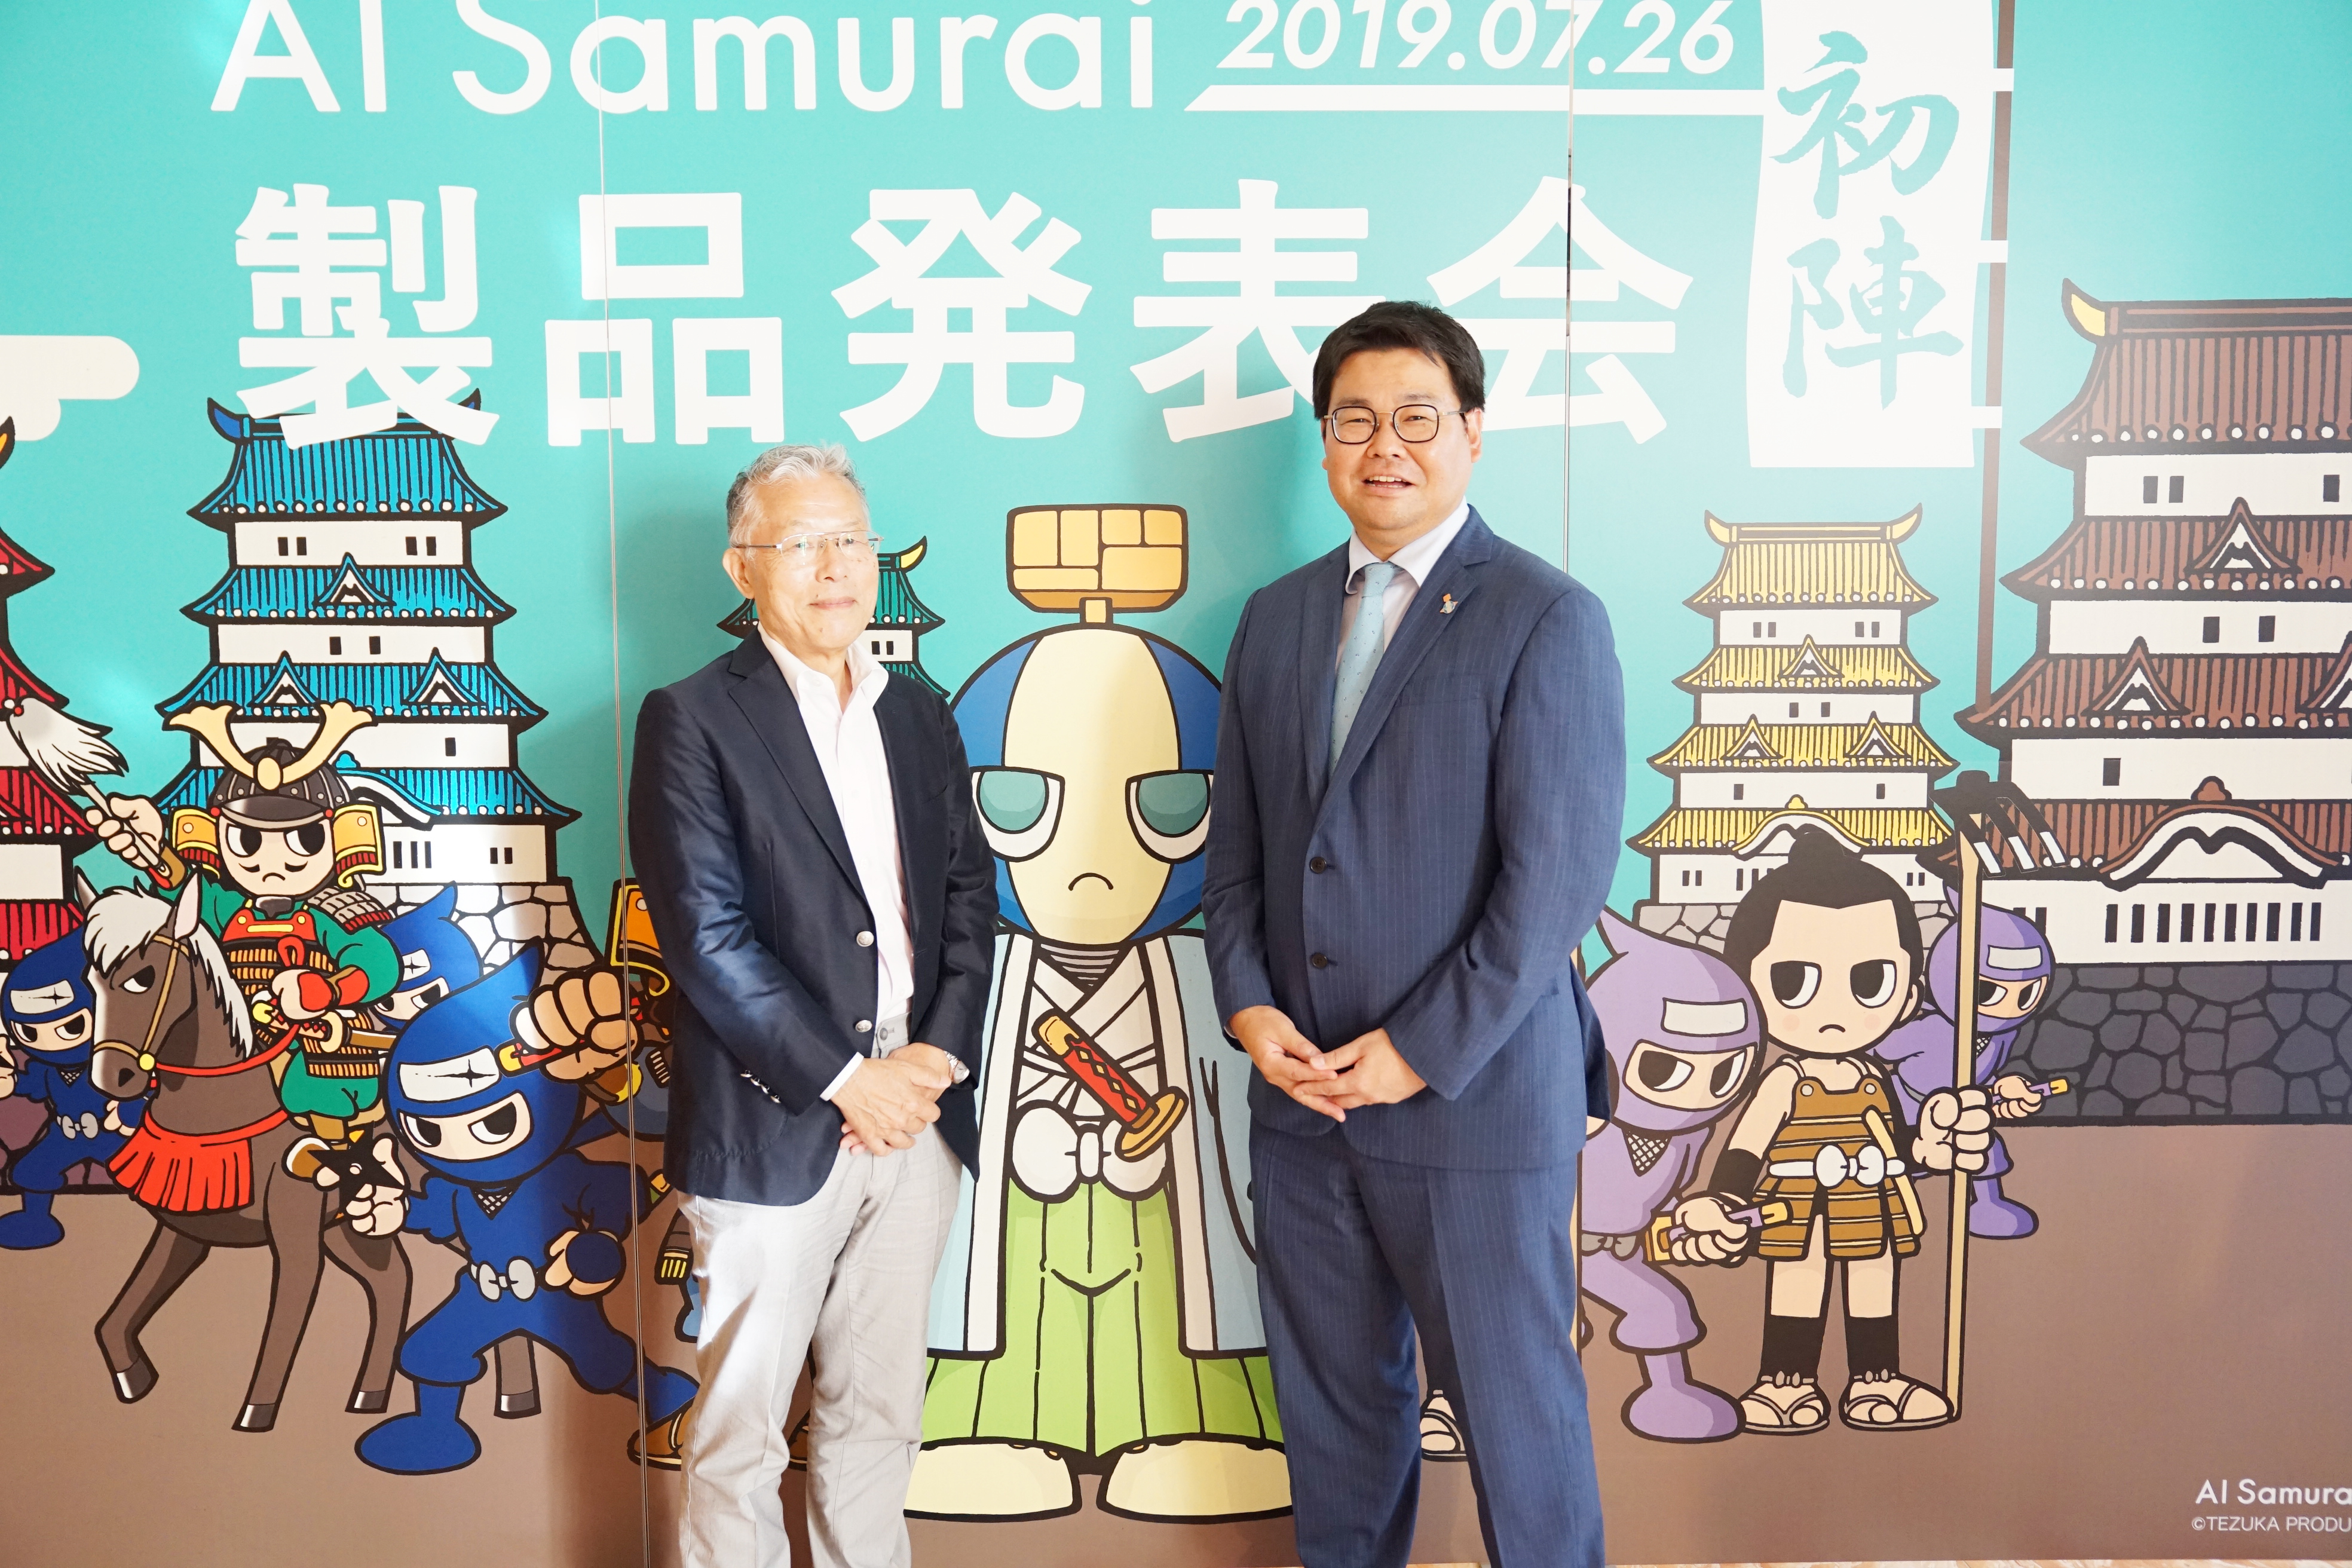 株式会社AI Samuraiが製品発表会を開催